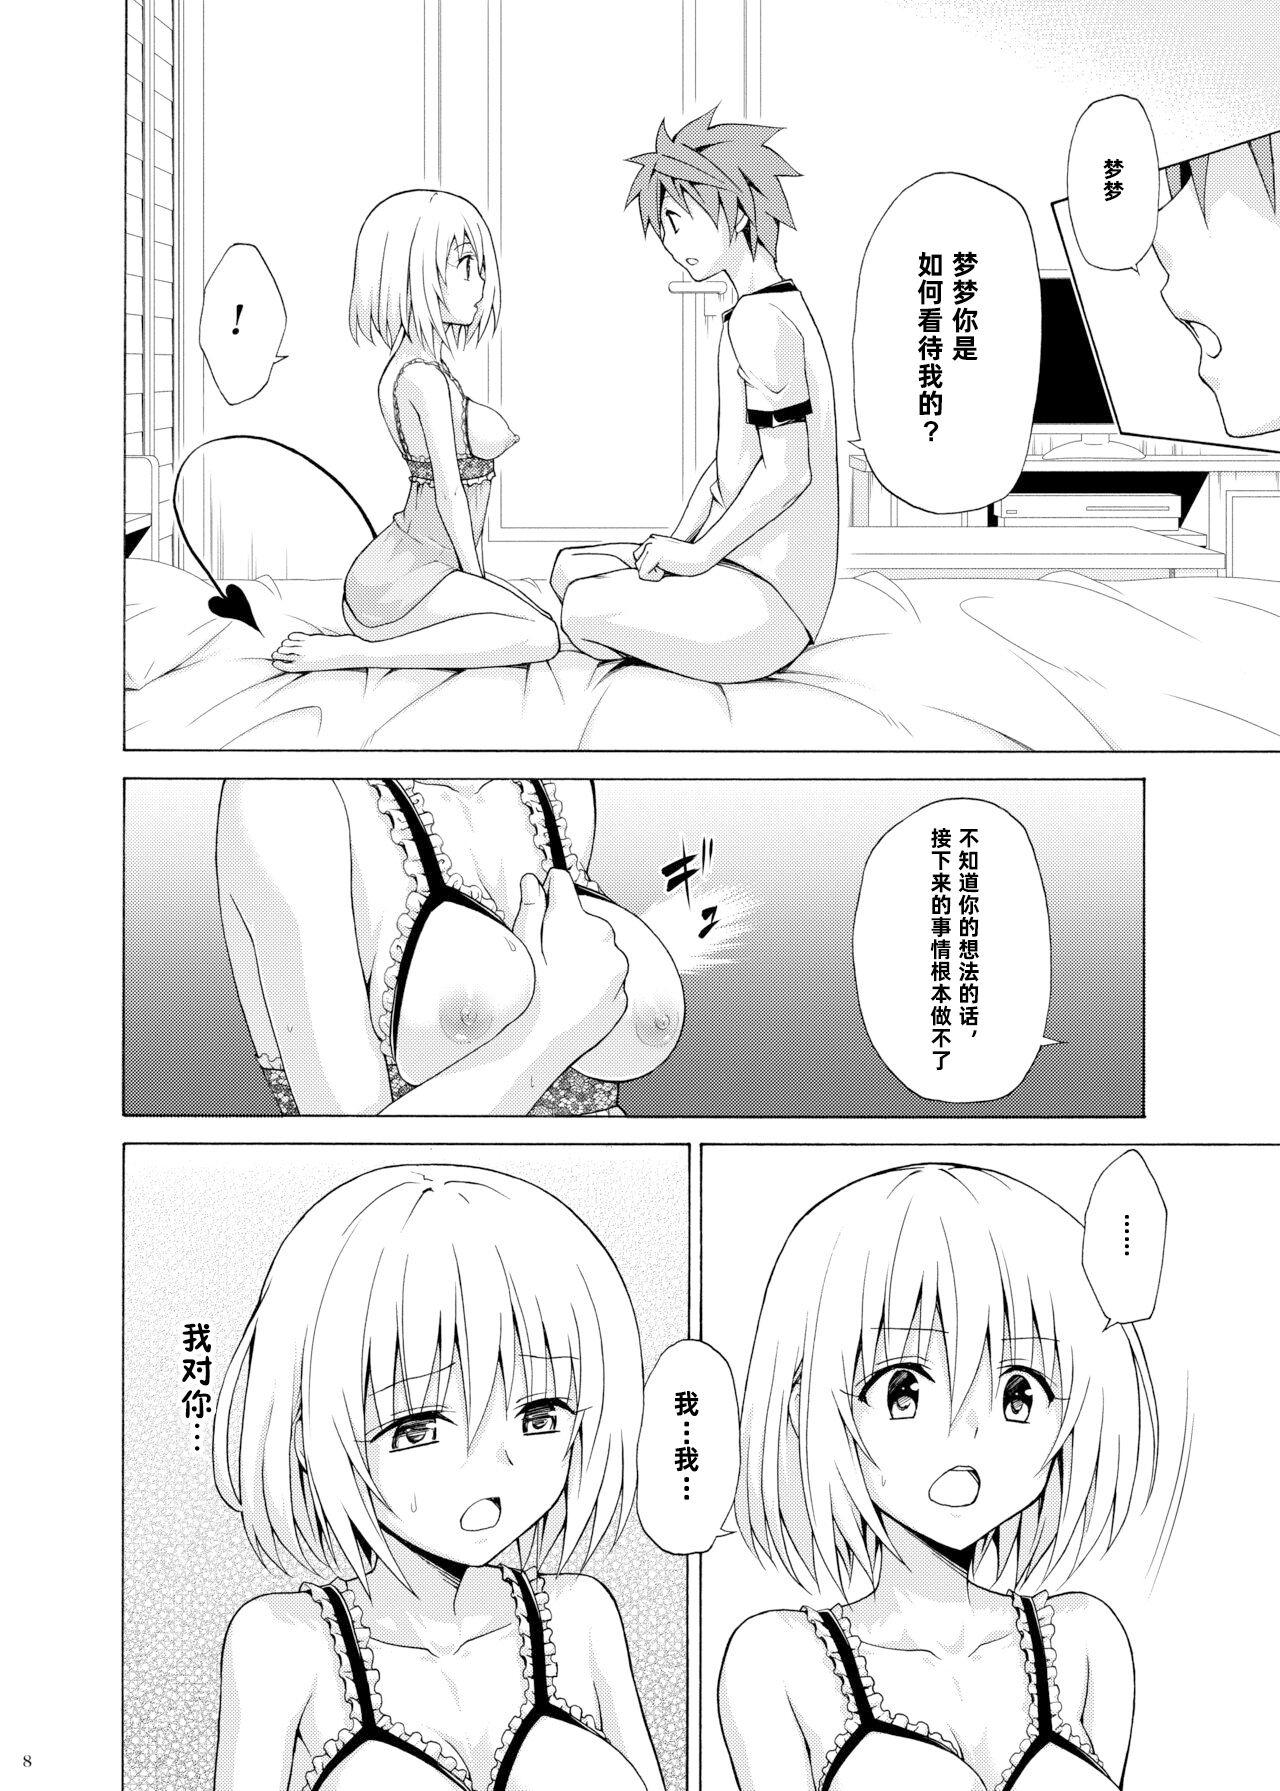 Anime Mezase! Rakuen Keikaku Vol. 9 - To love-ru Gaysex - Page 8